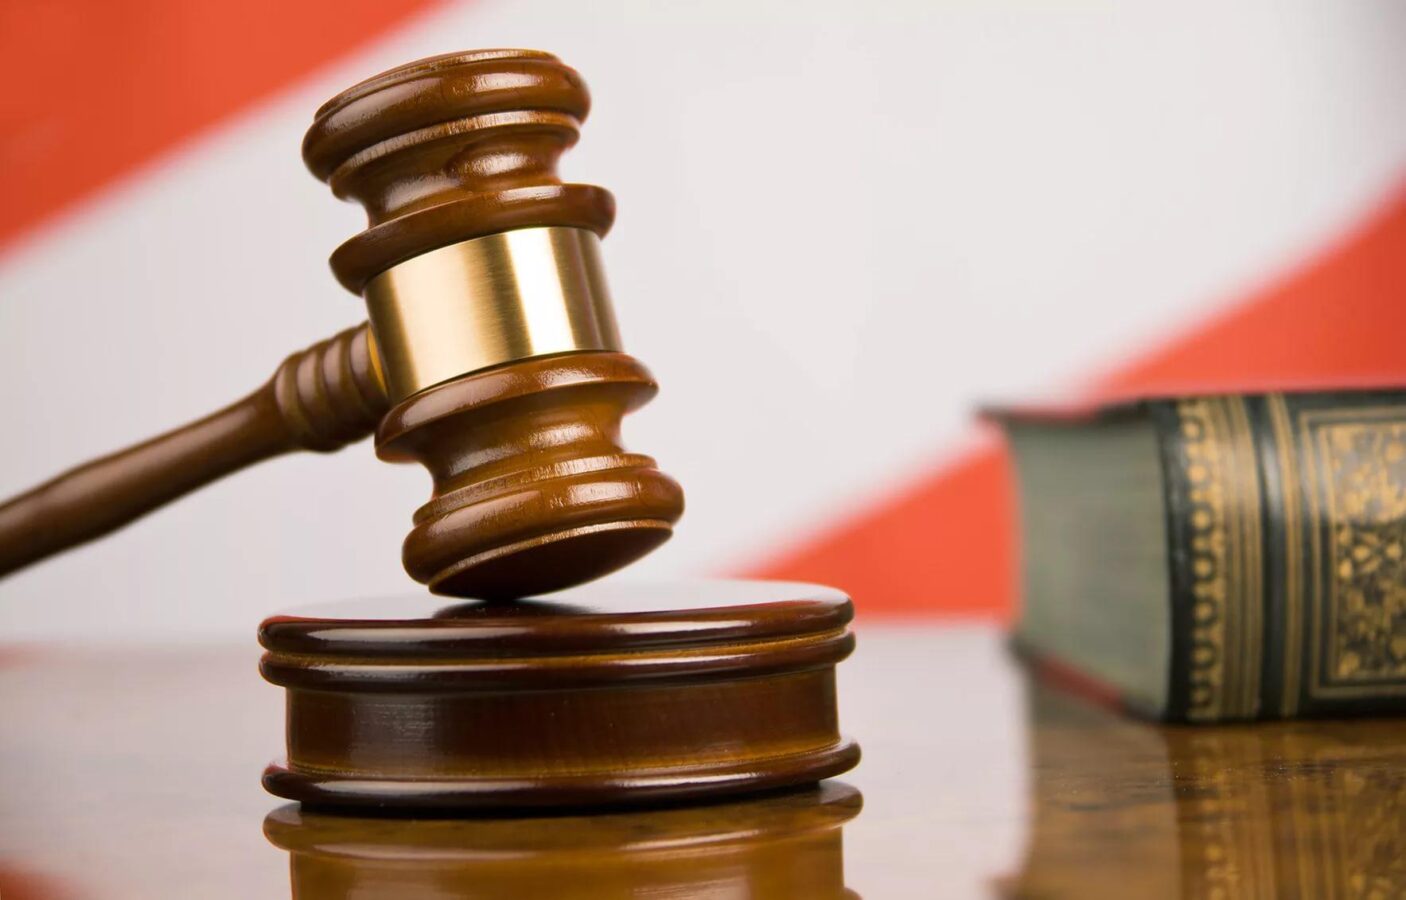 Прокурор запросил 24 года для обвиняемых в изнасиловании школьницы в Кукморе